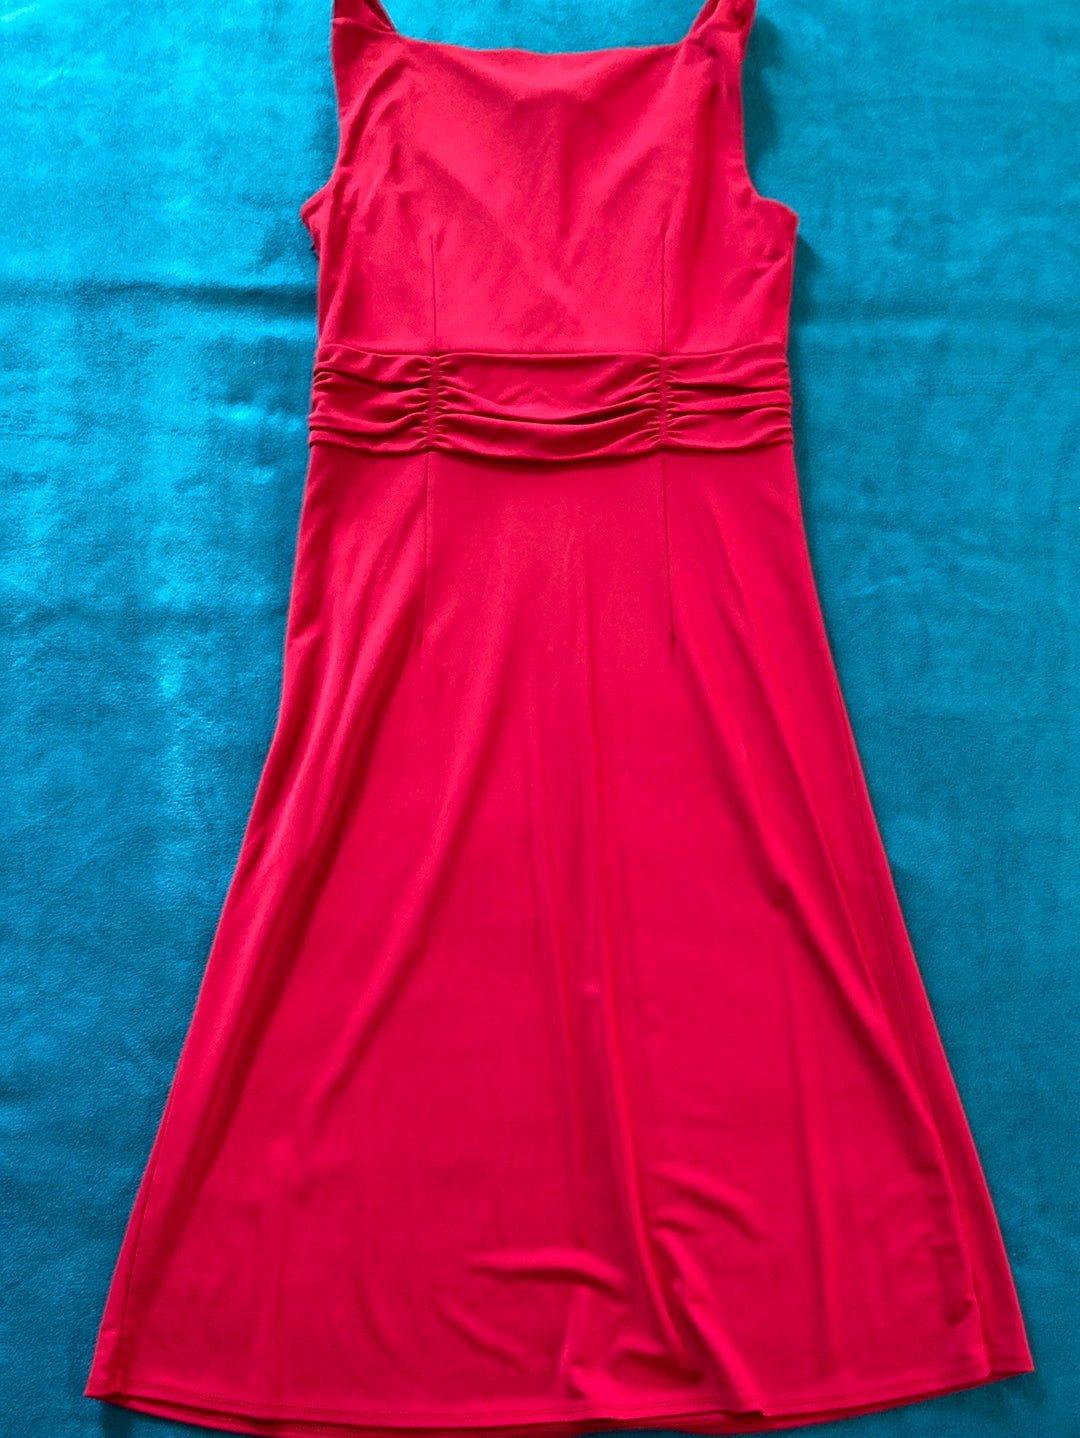 RED STUNNER LOFT Dress Size 4